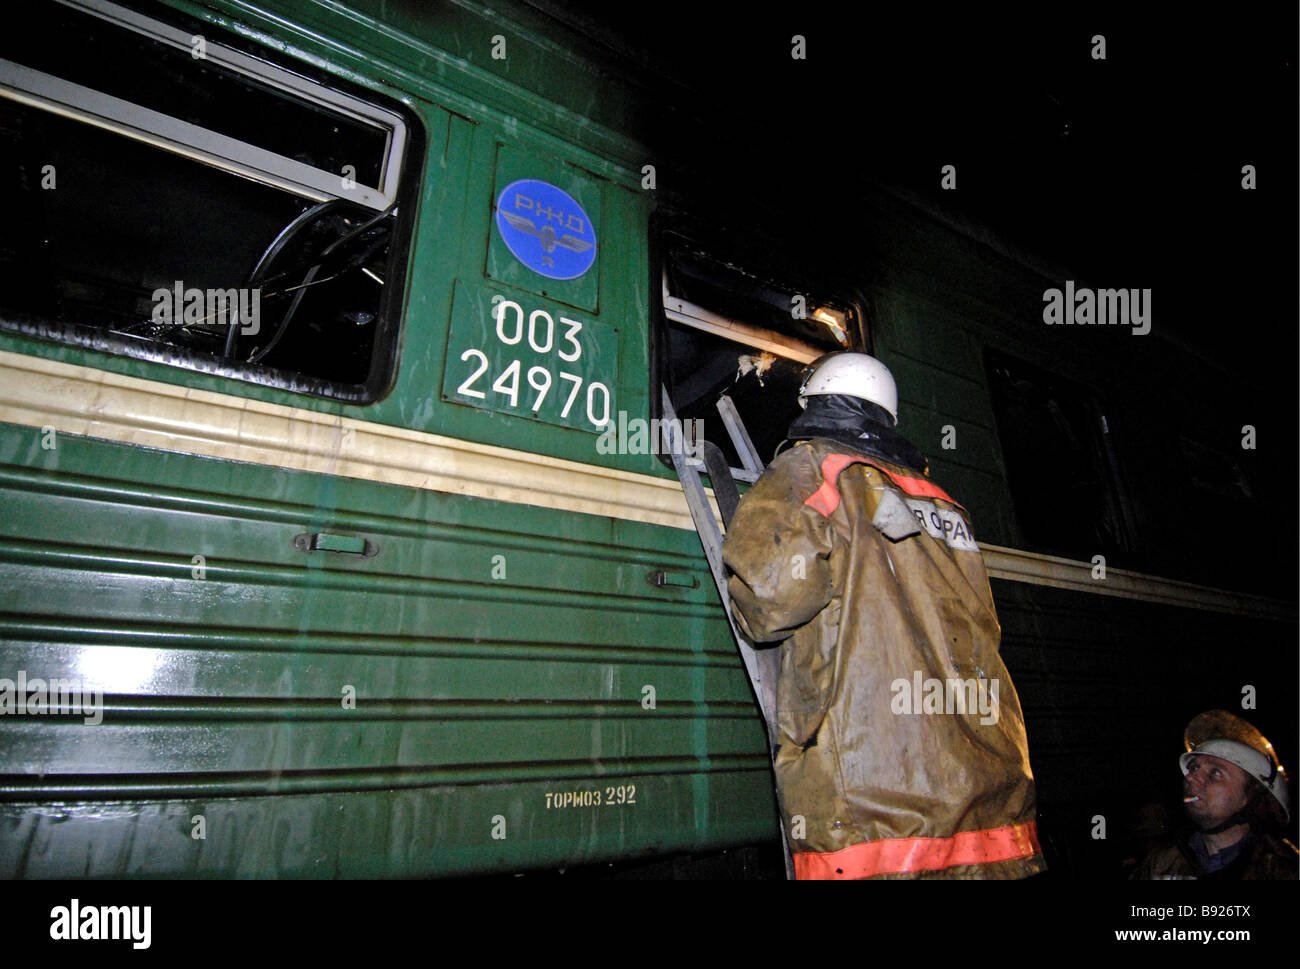 Что случилось на киевском направлении. Сгорел вагон электрички. Вагон загорелся на железнодорожной станции. Пожар в вагоне поезда что делать. Поезд 245а.